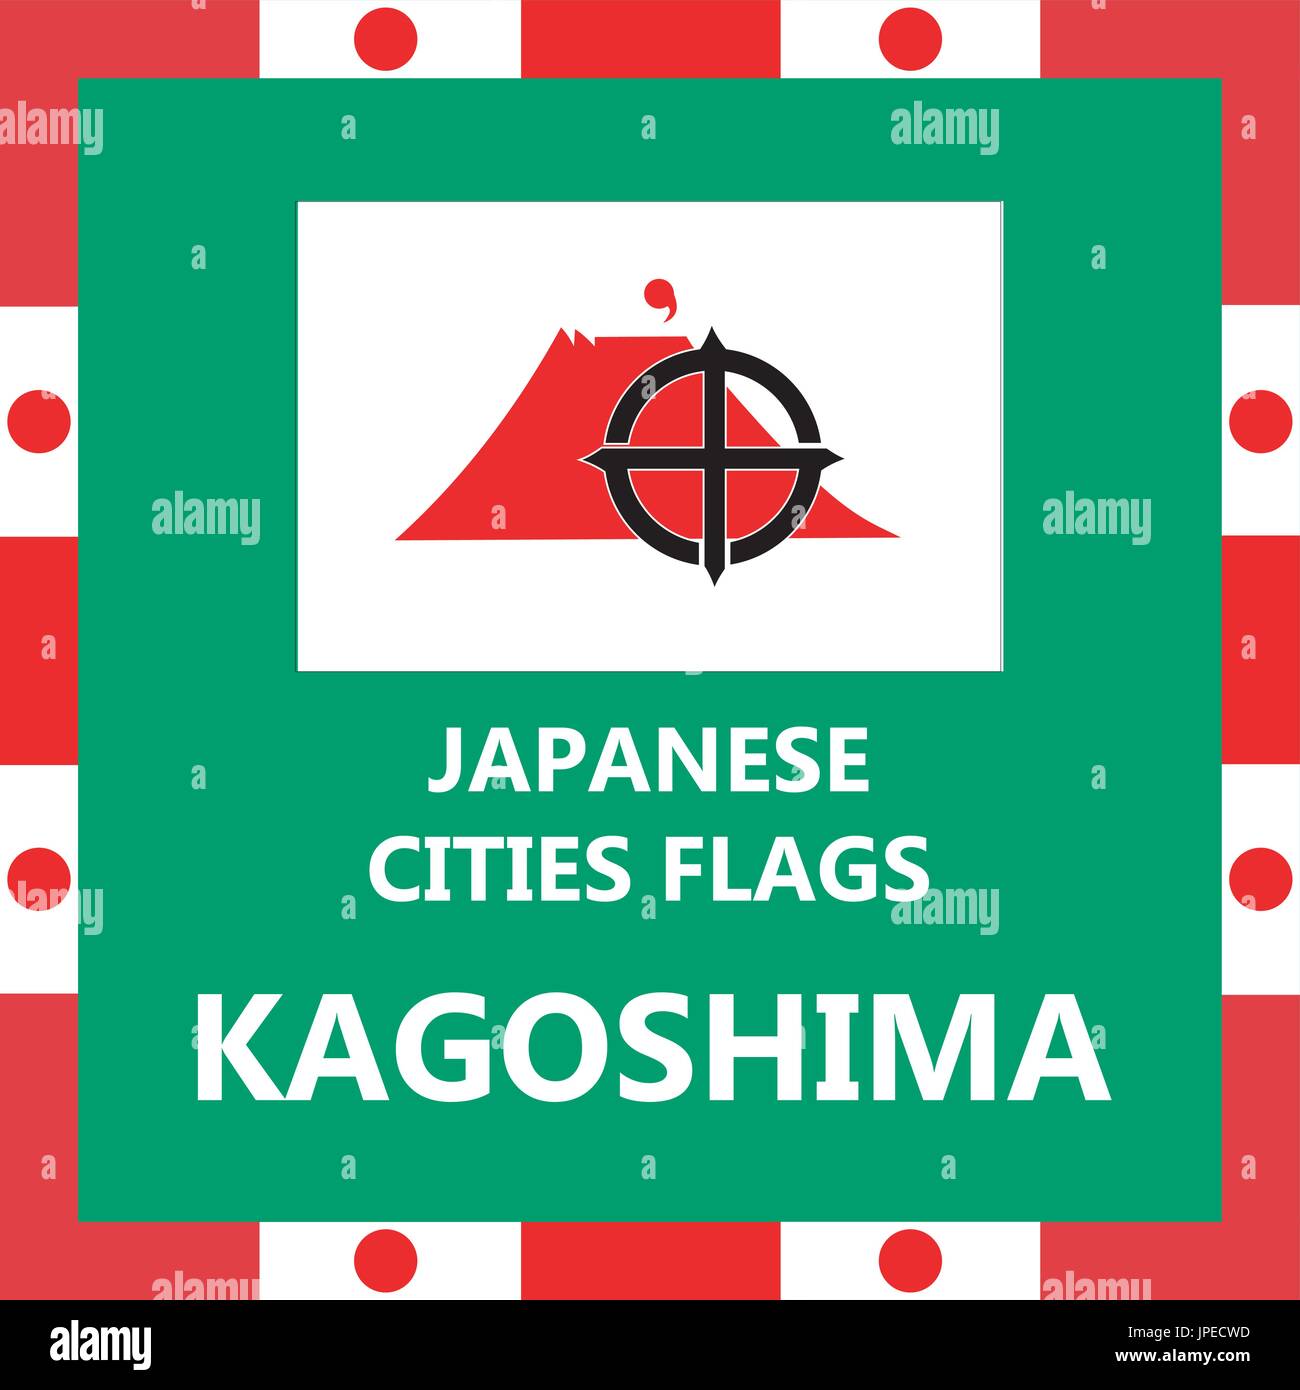 Pavillon de ville japonaise Kagoshima Illustration de Vecteur